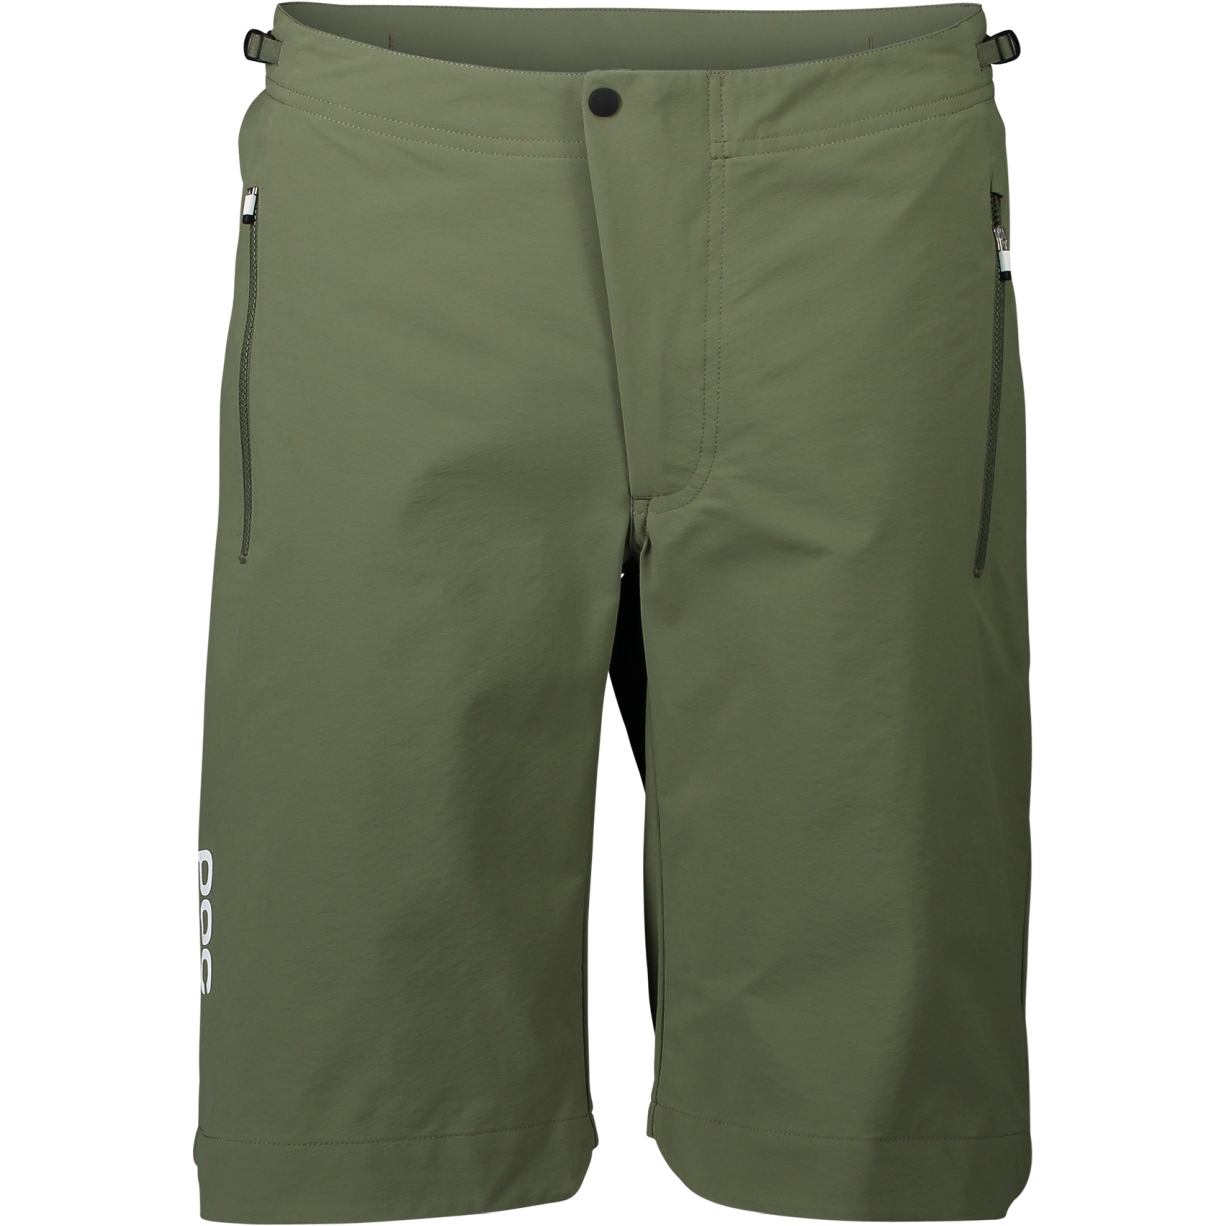 Produktbild von POC Essential Enduro Shorts Damen - 1460 epidote green